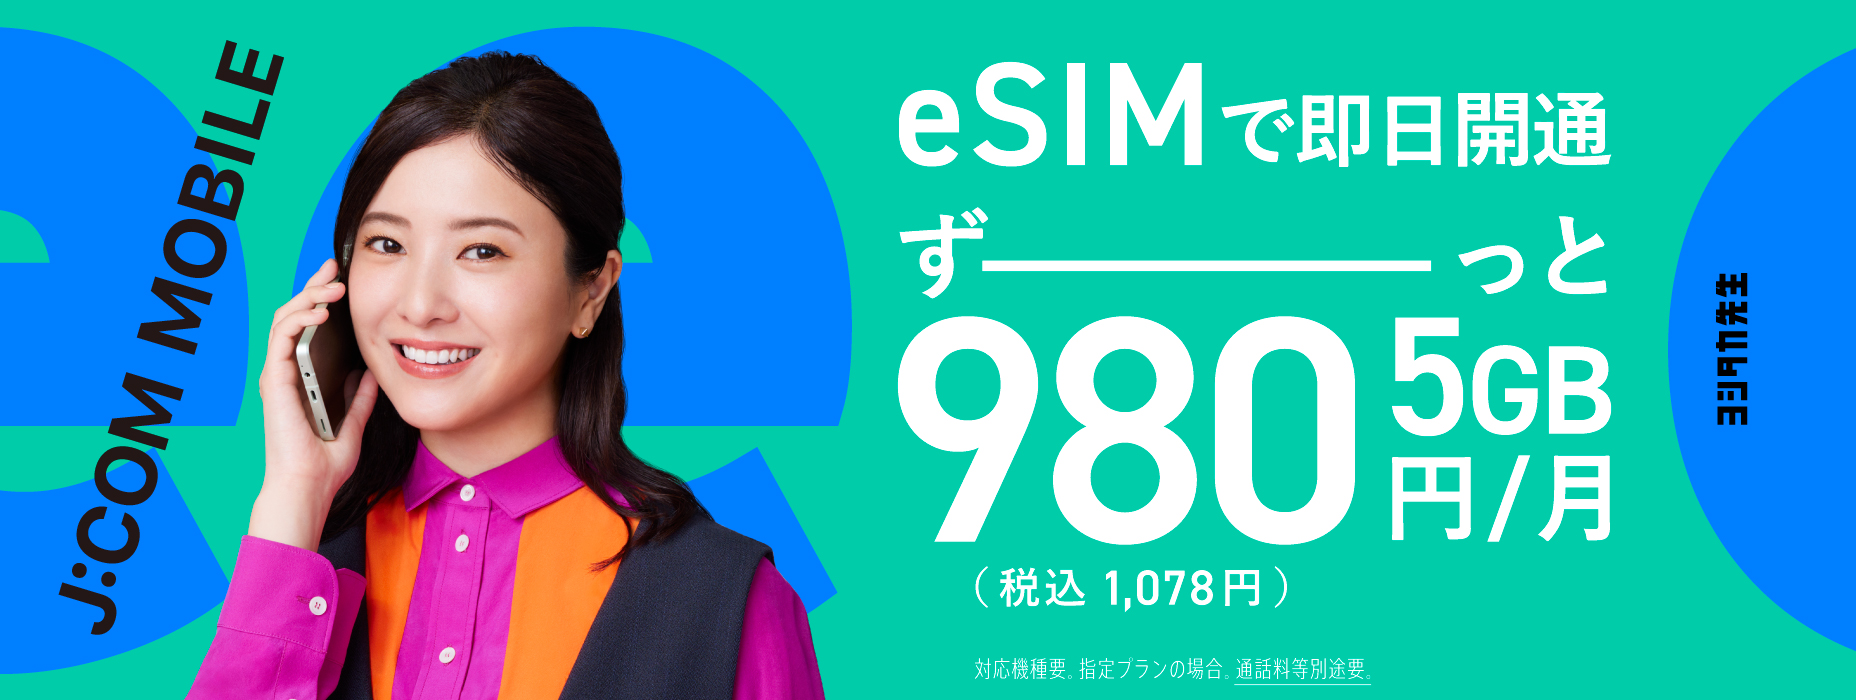 eSIM新登場！データ盛適用で5GBずーっと980円（税込1,078円）